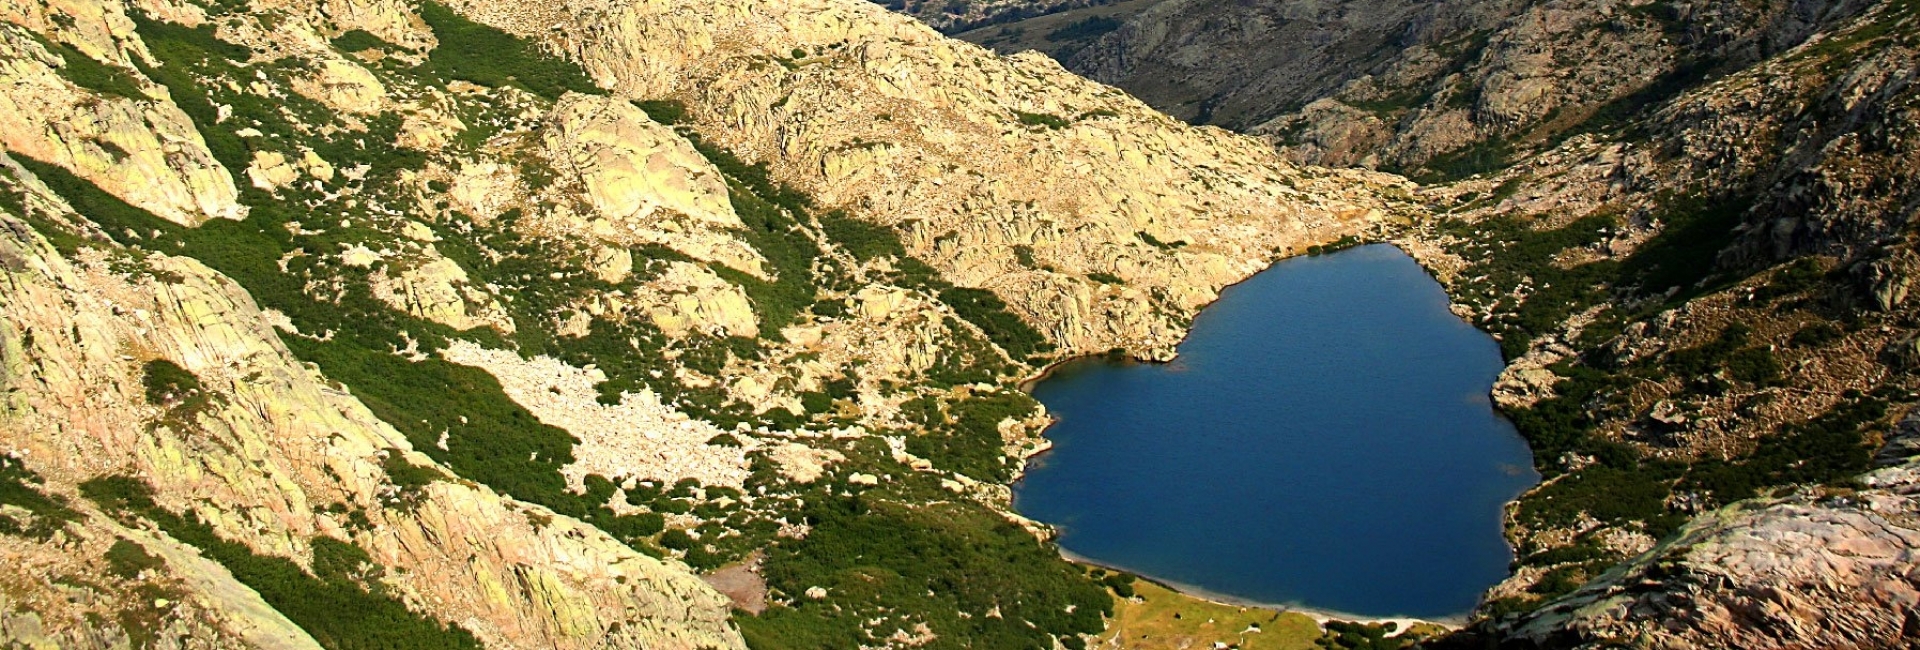 Lake of Goria